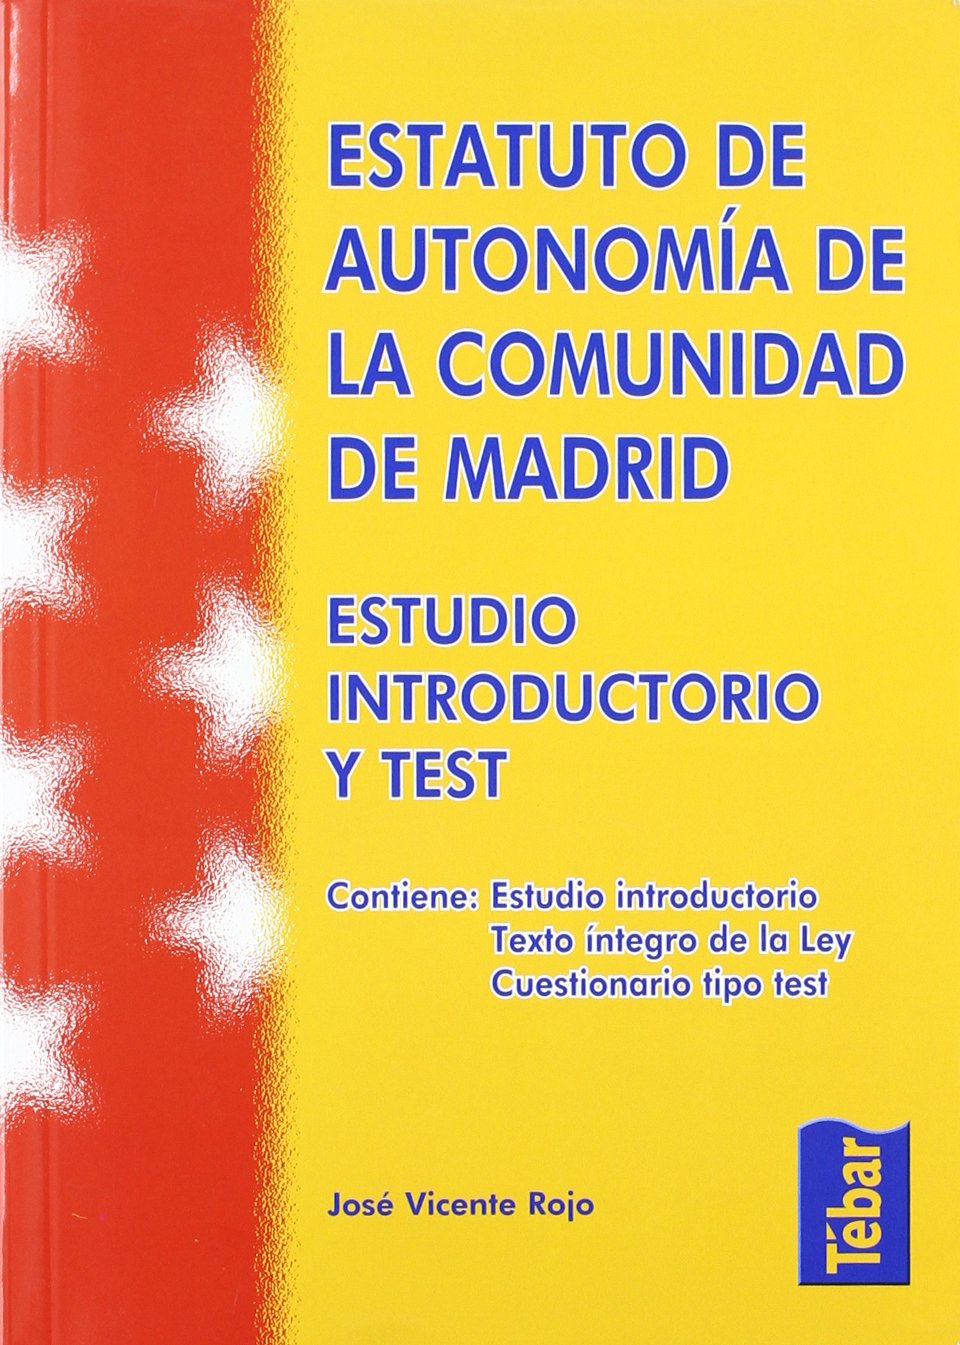 estatuto autonomia comunidad de madrid estudio introductorio y test